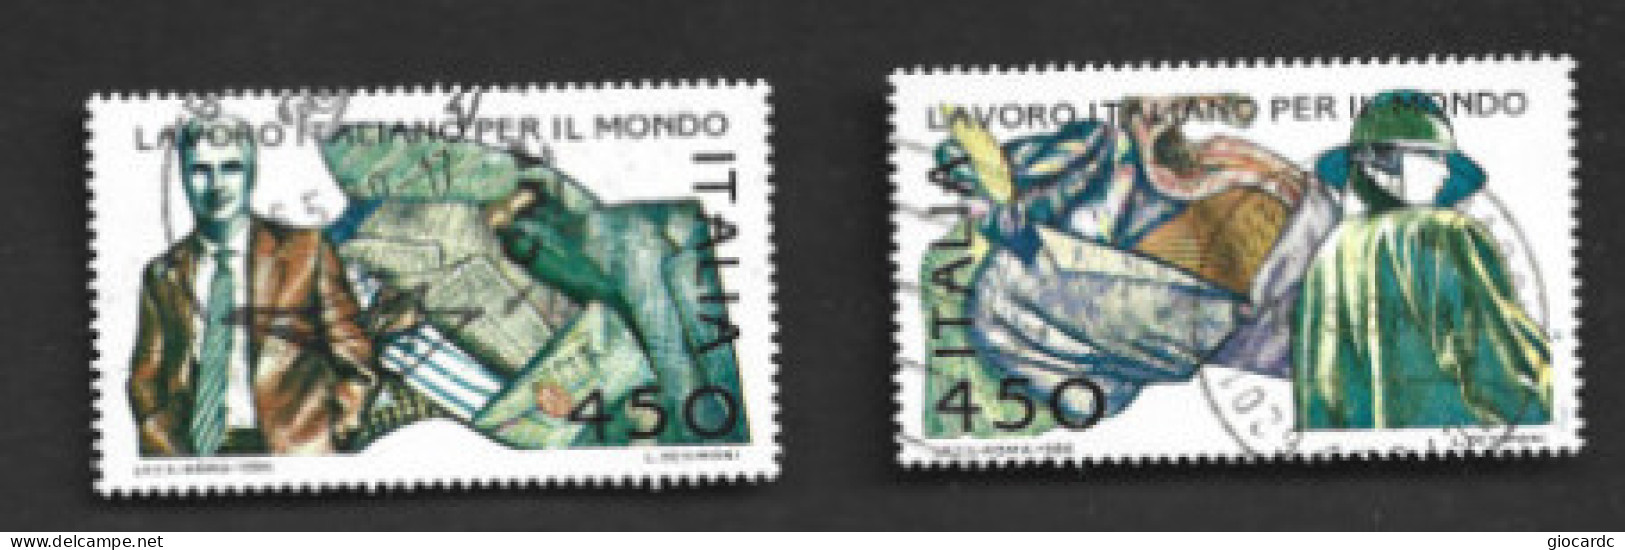 ITALIA REPUBBLICA  - SA 1776.1767  - 1986  LAVORO ITALIANO: MODA  (COMPLET SET OF 2)  -  USATO  -  RIF. 30813 - 1981-90: Oblitérés